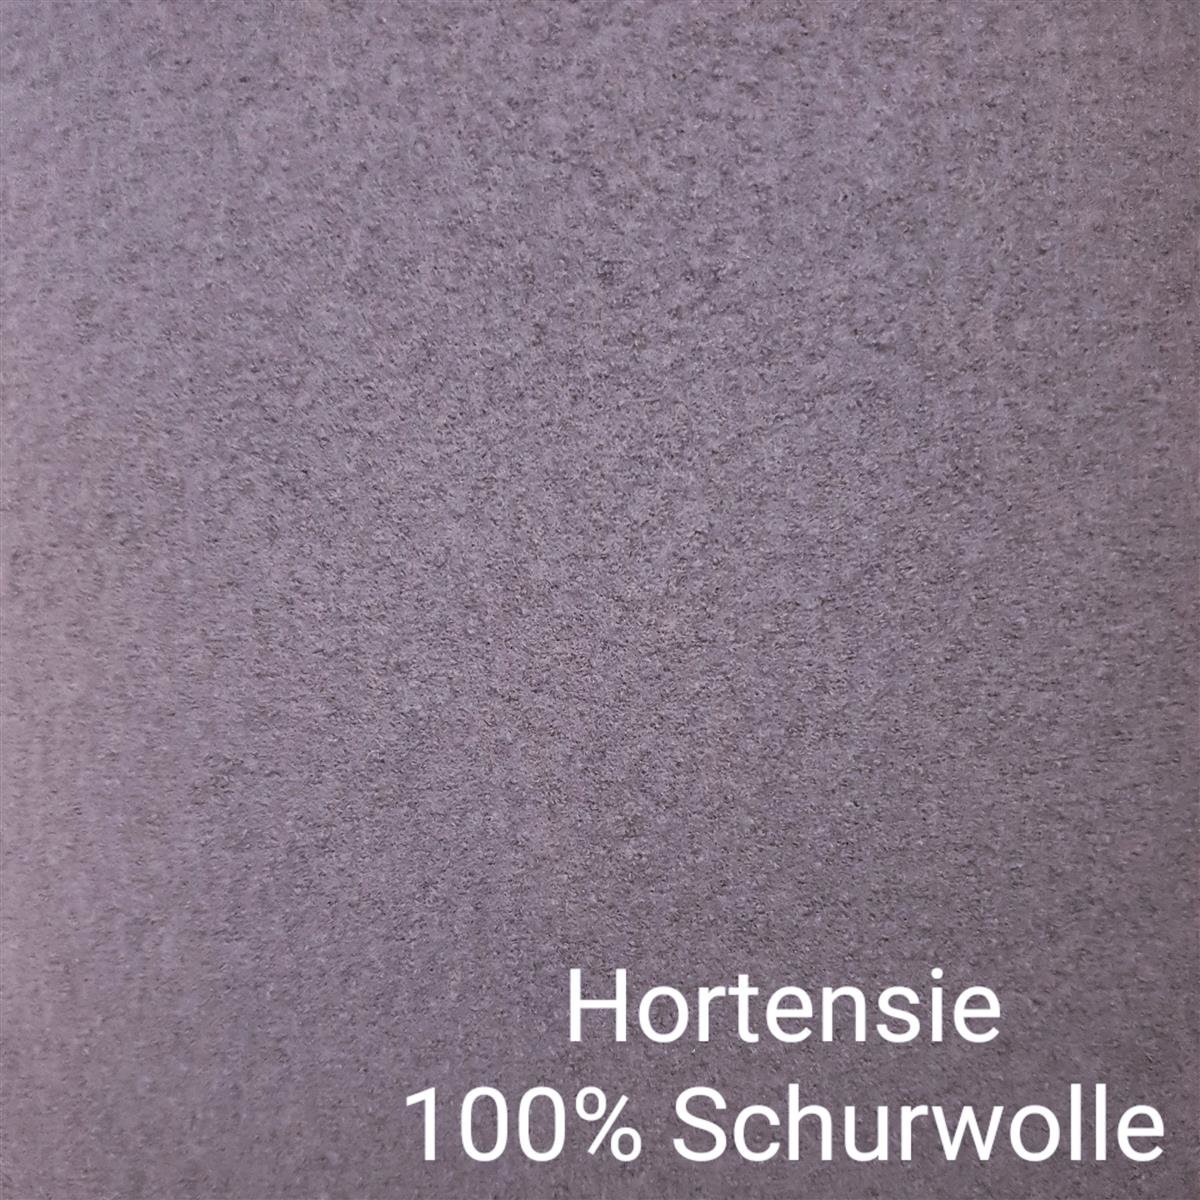 Hortensie 100% Schurwolle